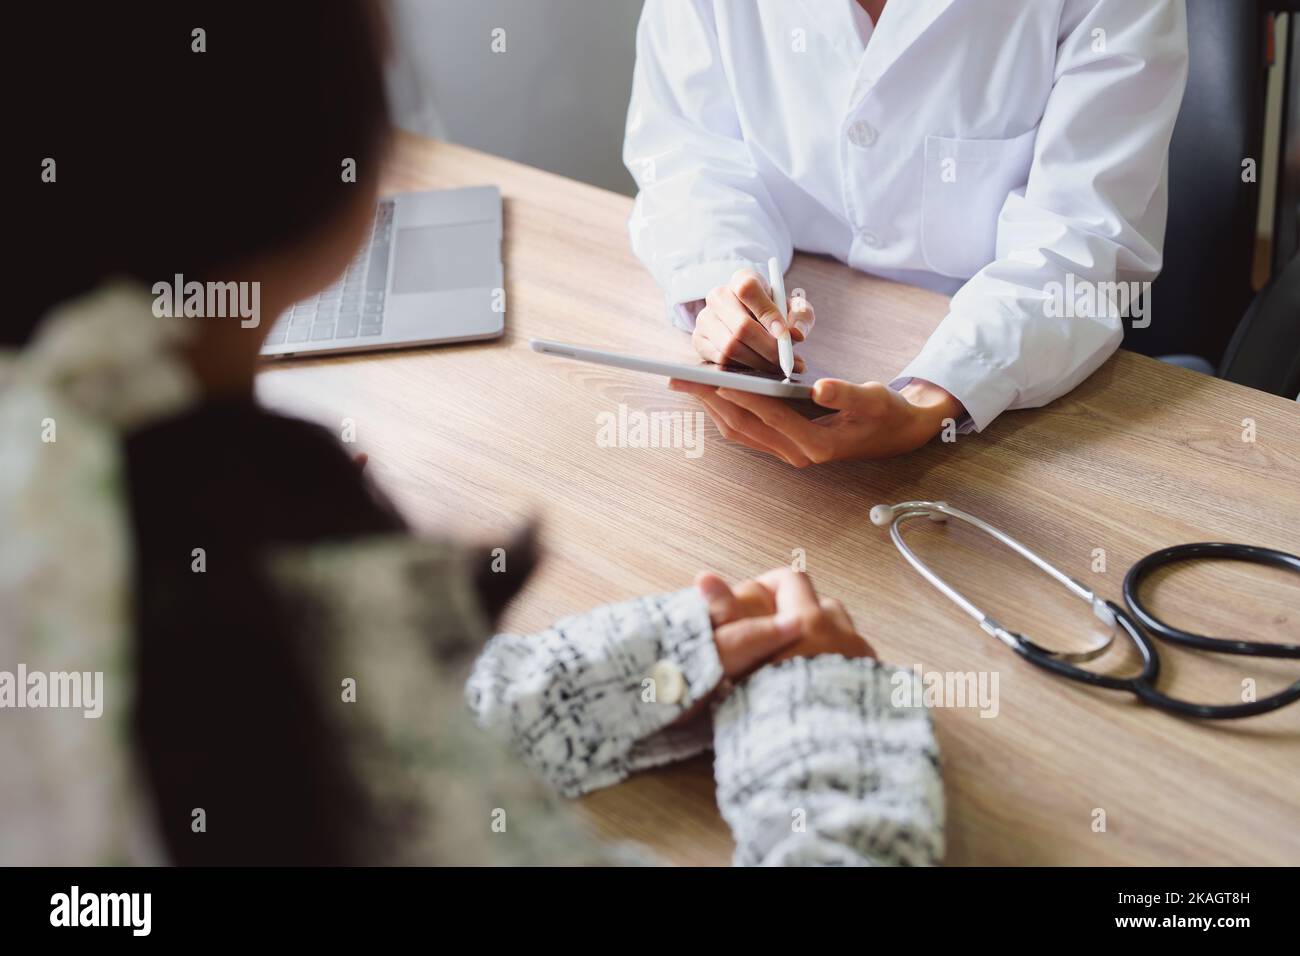 Portrait d'un médecin conseillant des clients sur des problèmes de santé tenant une tablette pour travailler et parlant aux patients qui viennent à un traitement Banque D'Images